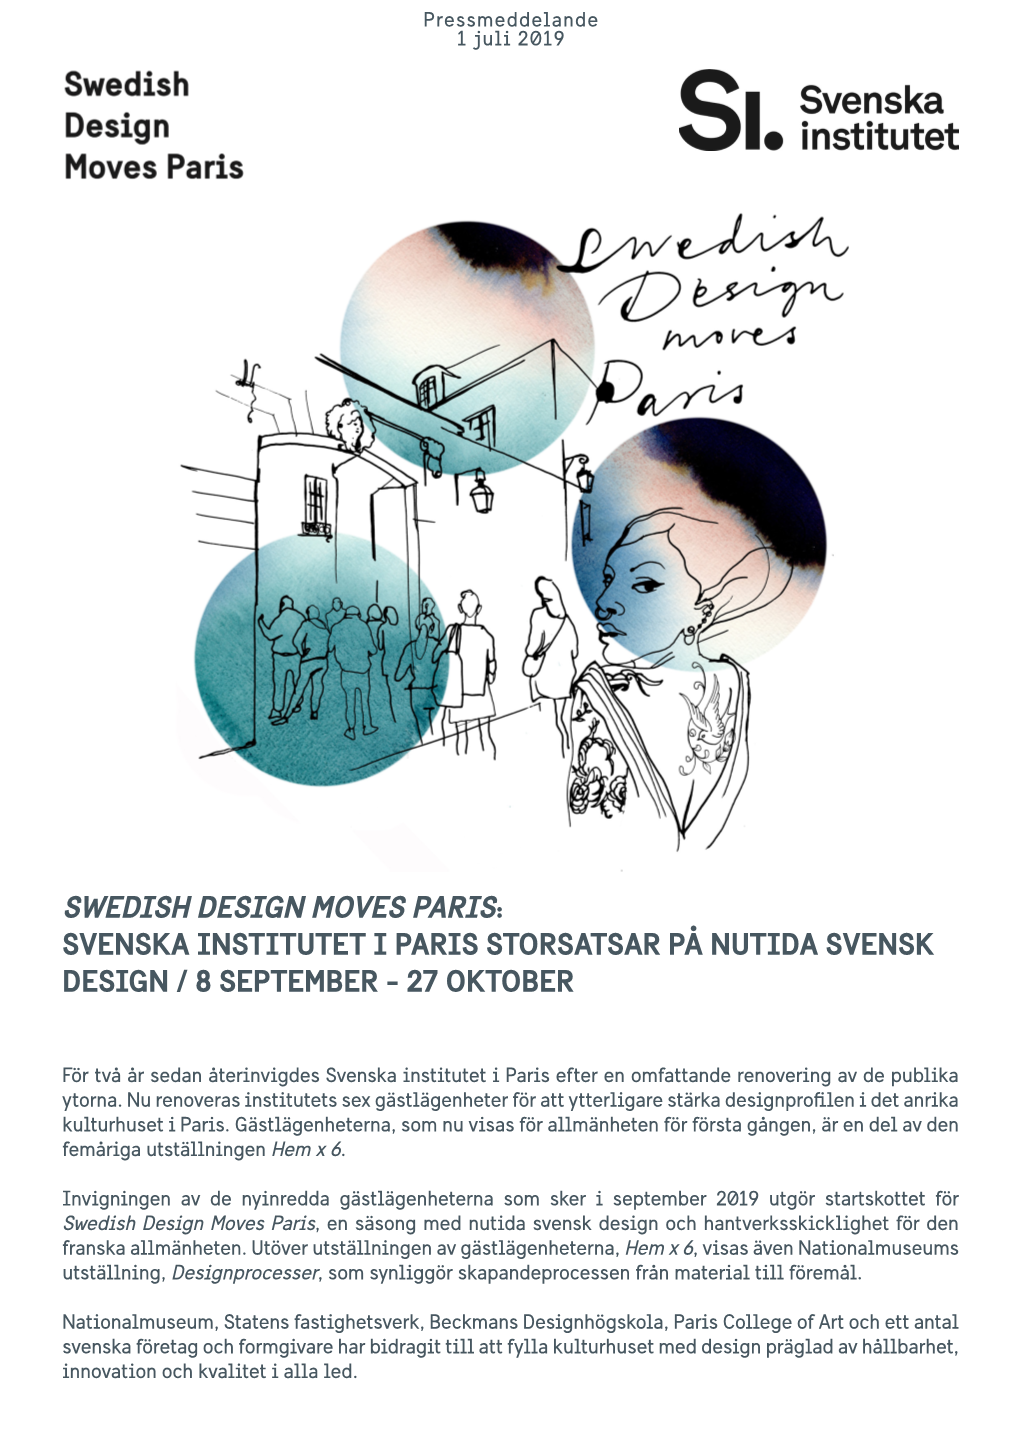 Svenska Institutet I Paris Storsatsar På Nutida Svensk Design / 8 September - 27 Oktober